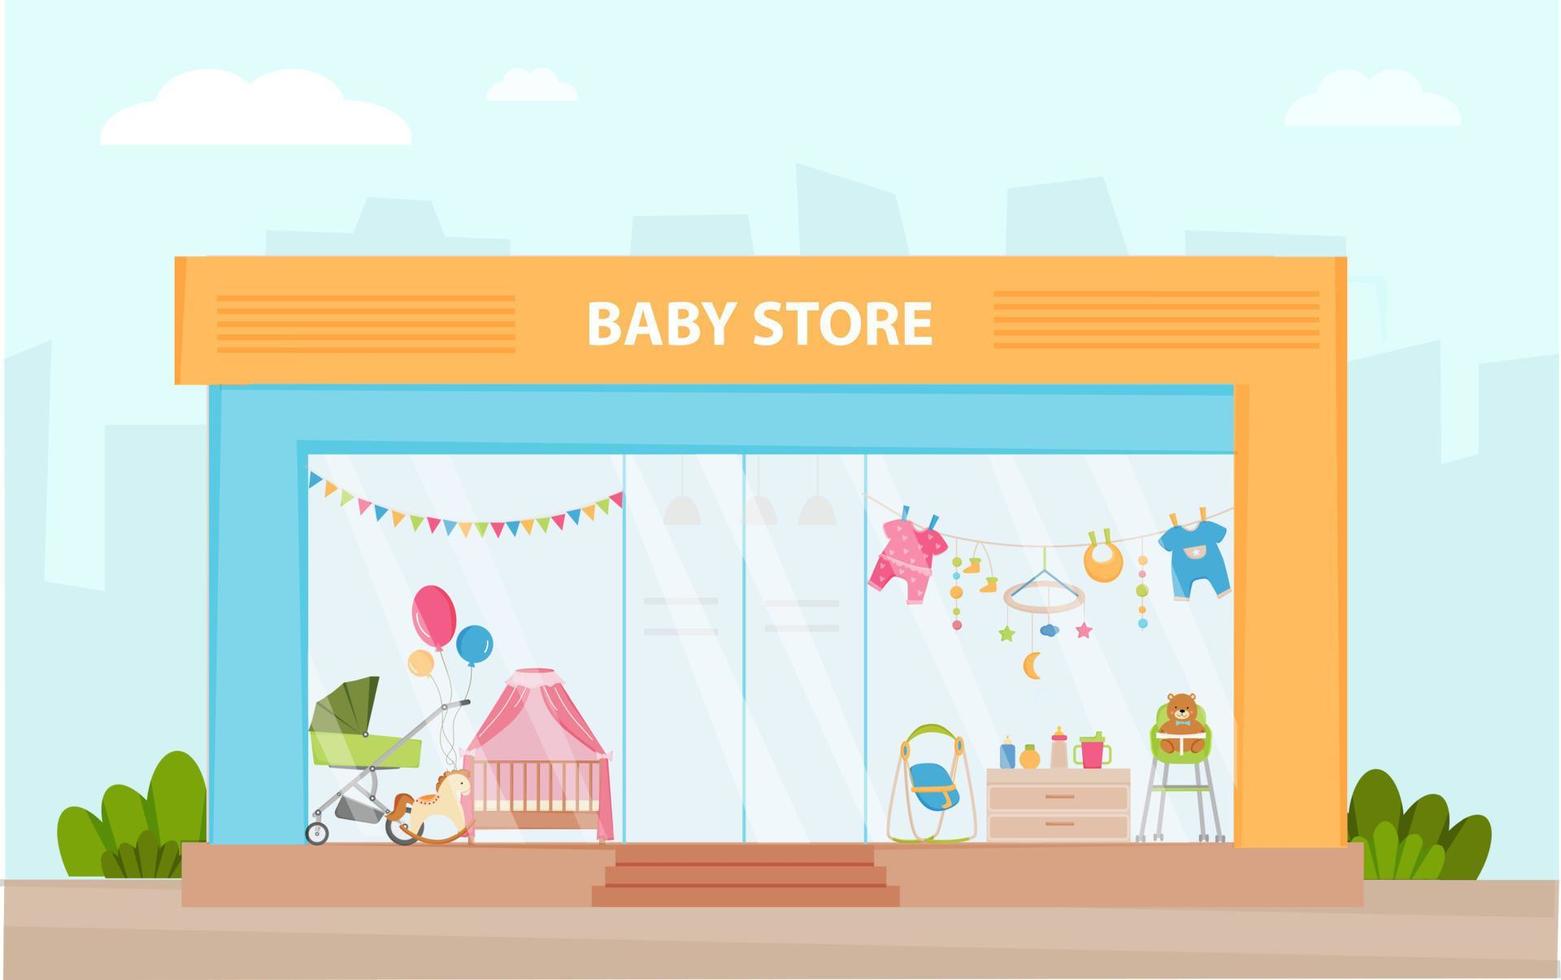 façade de magasin de bébé. illustration vectorielle de magasin pour enfants modernes. piste de vente au détail. vitrine avec différents produits pour nouveau-nés, bébés. enfants. vecteur